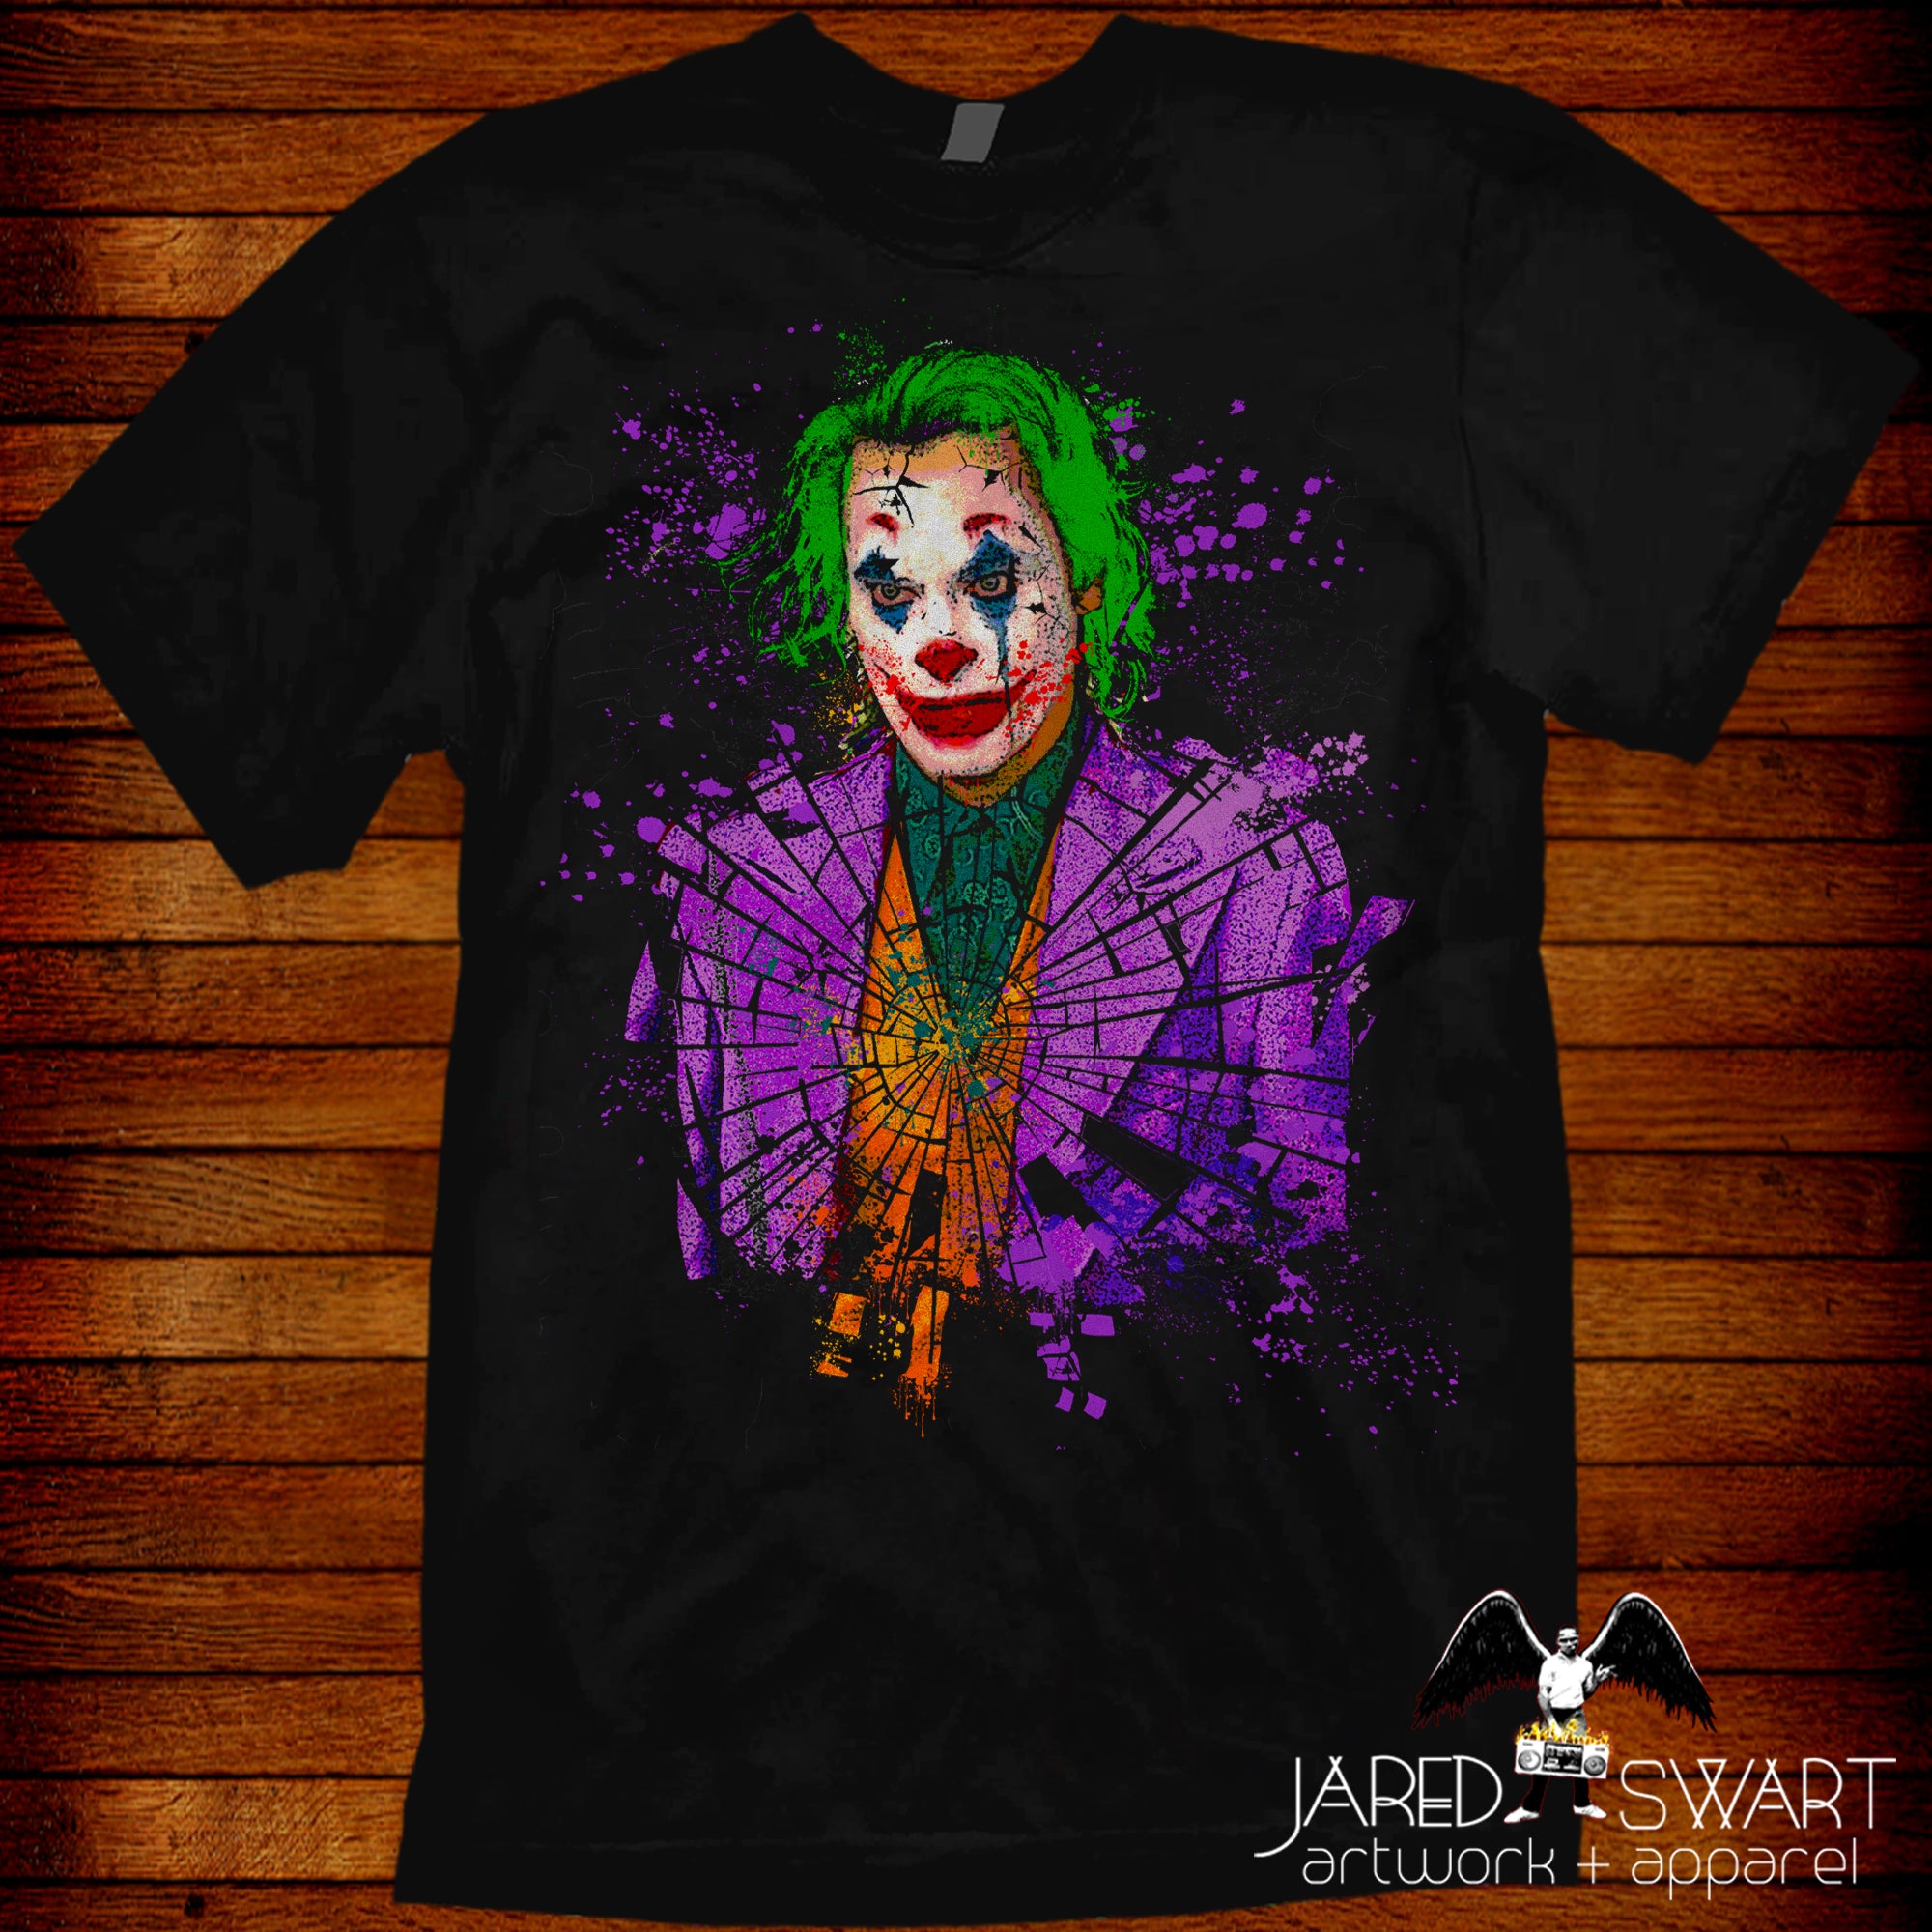 the joker t shirts